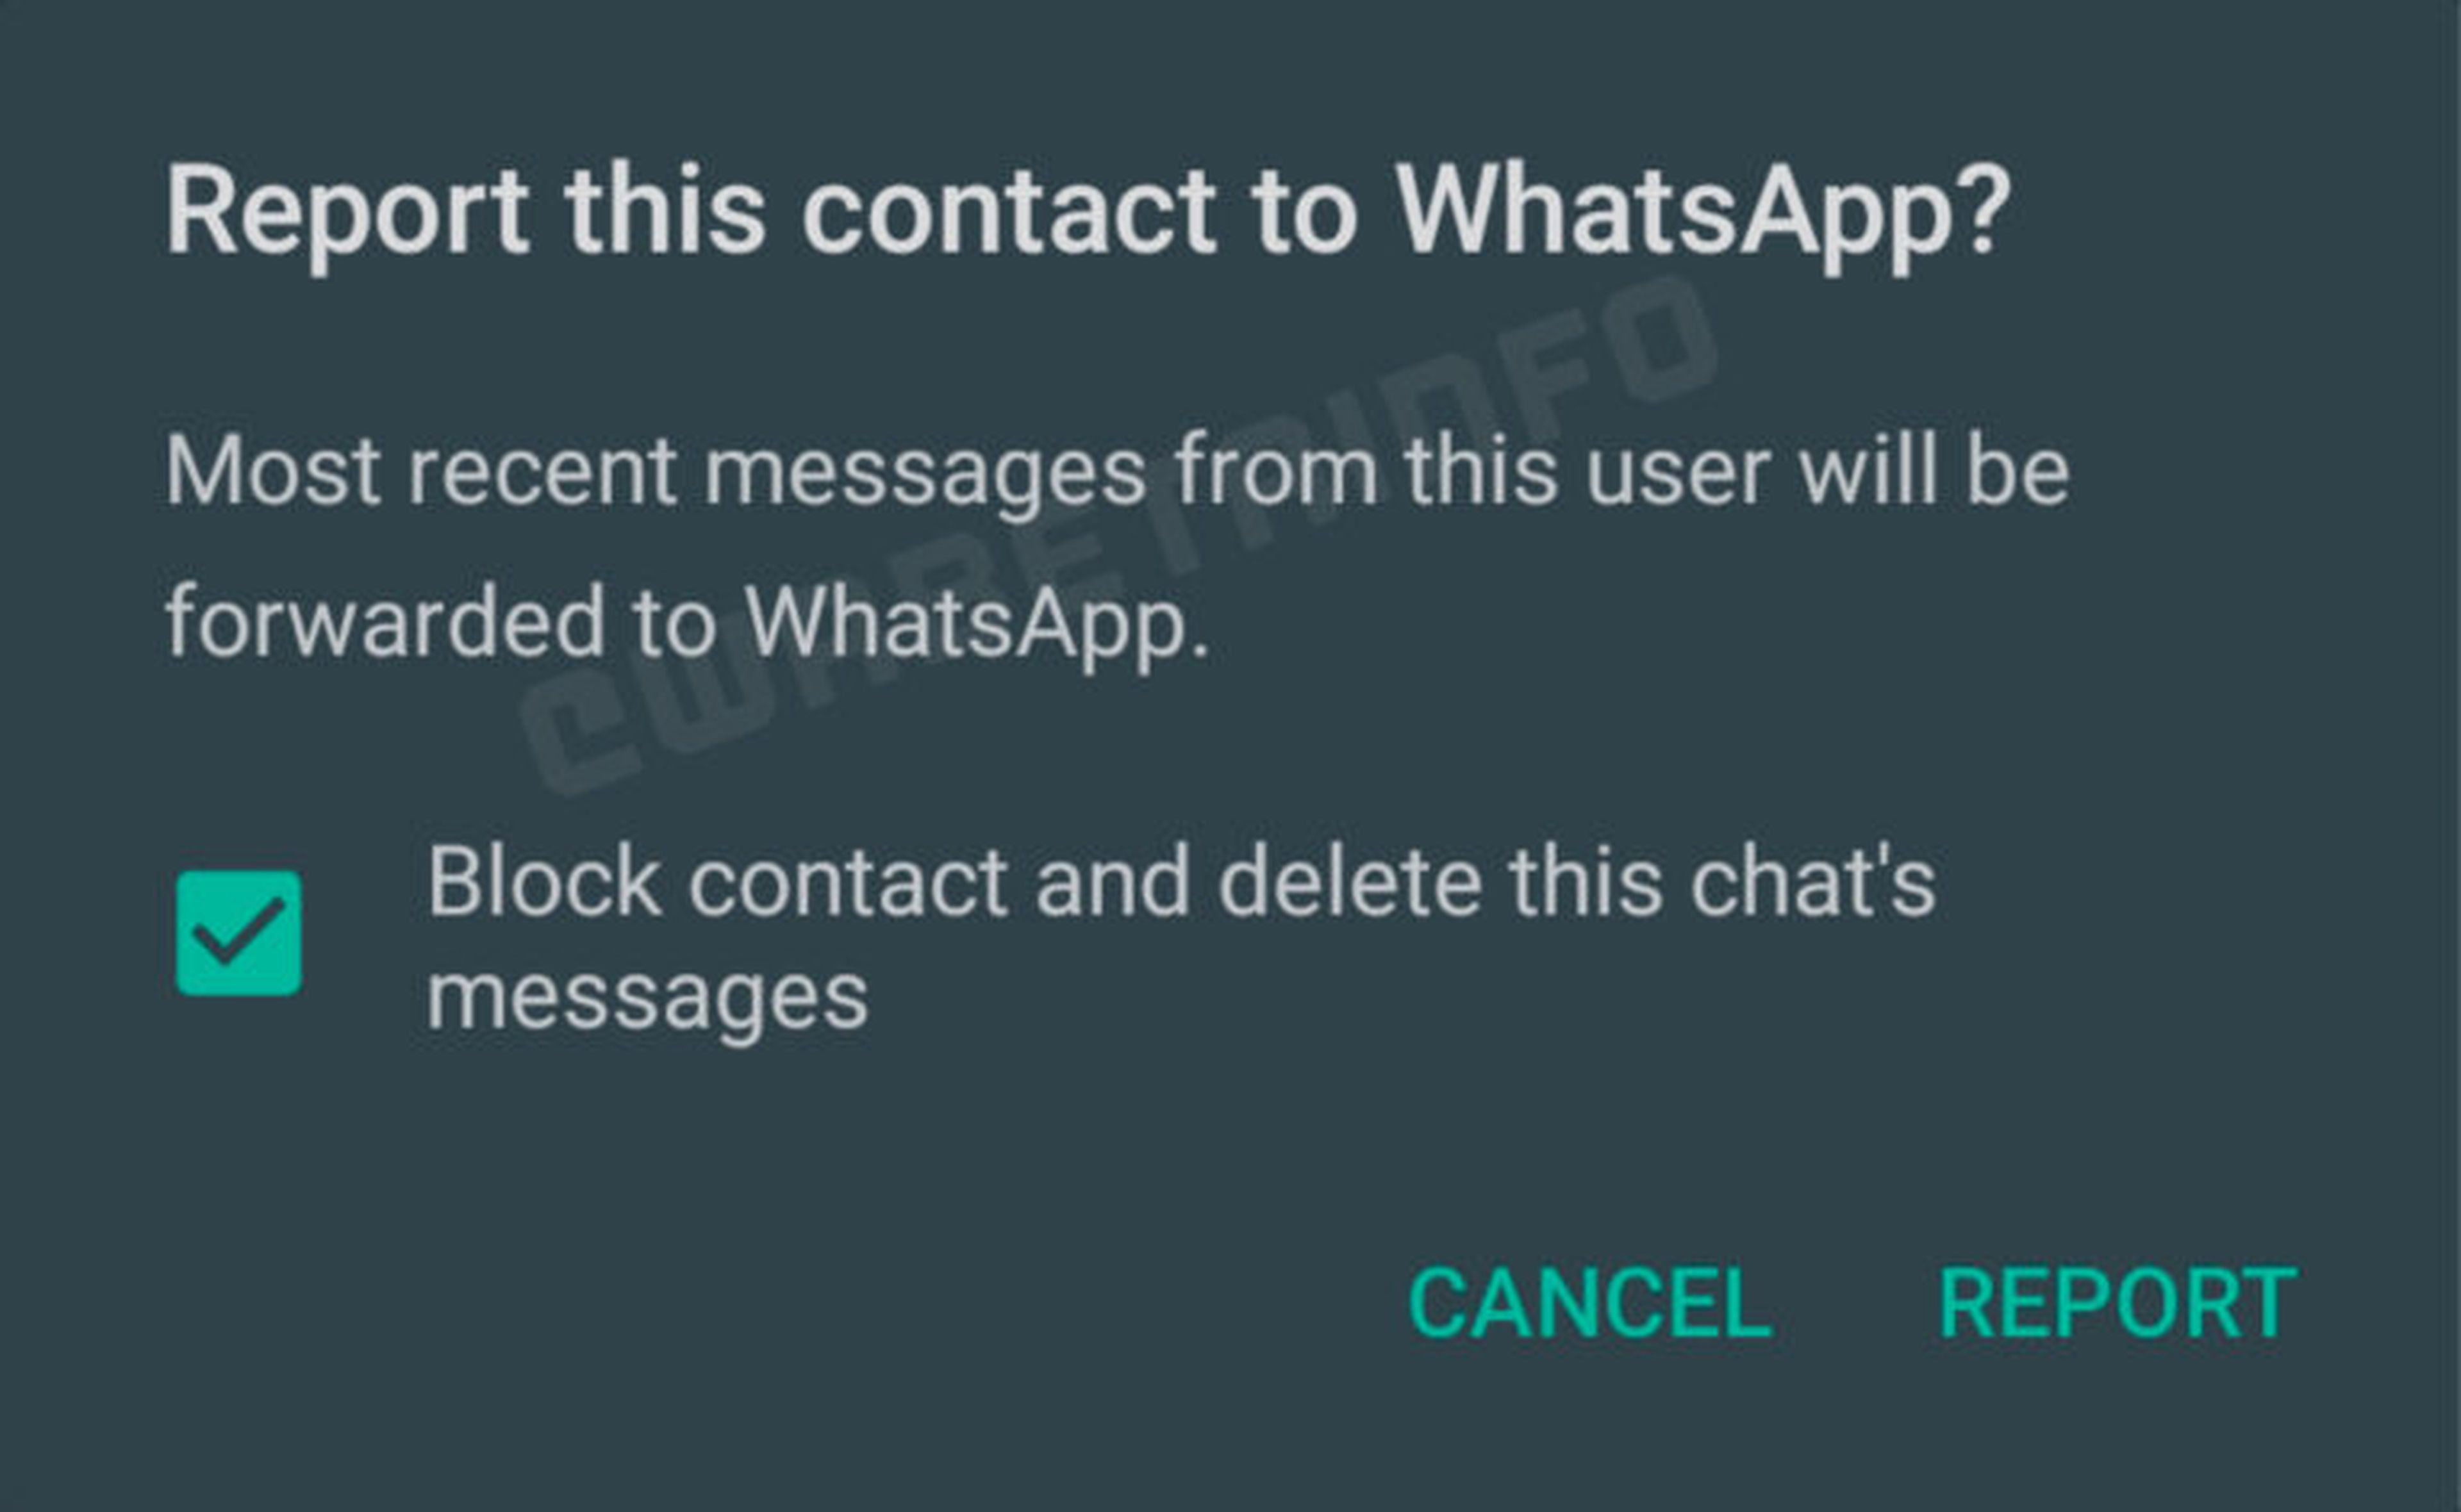 Reportar en Whatsapp